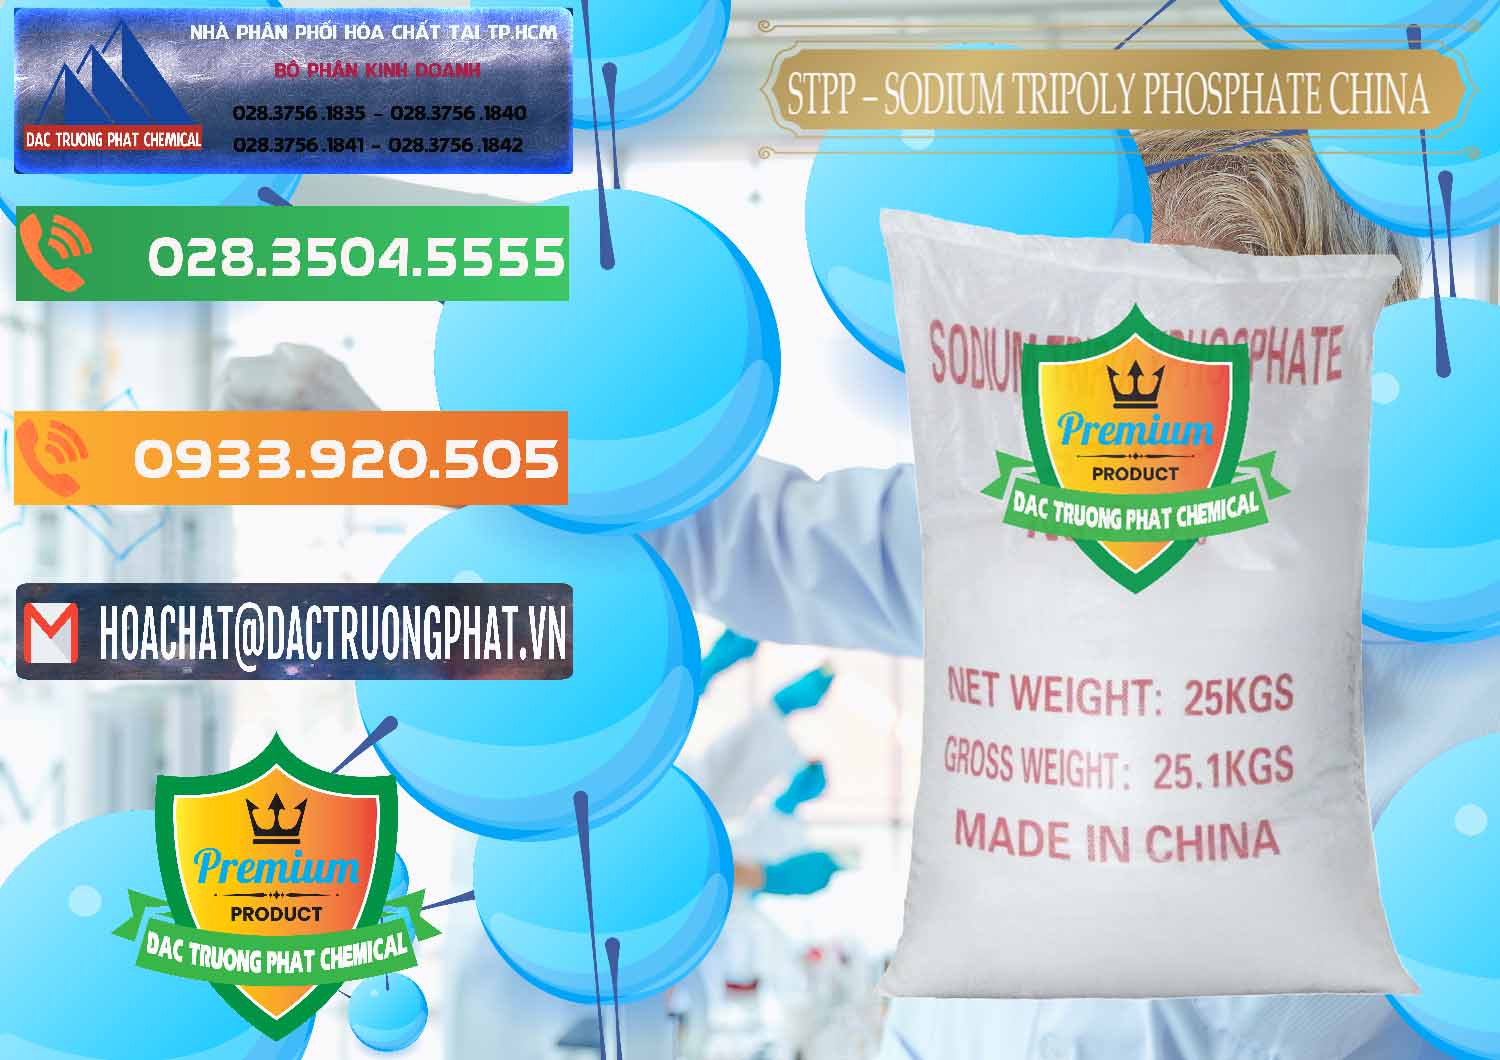 Đơn vị chuyên kinh doanh ( bán ) Sodium Tripoly Phosphate - STPP 96% Chữ Đỏ Trung Quốc China - 0155 - Nơi chuyên kinh doanh & cung cấp hóa chất tại TP.HCM - hoachatxulynuoc.com.vn